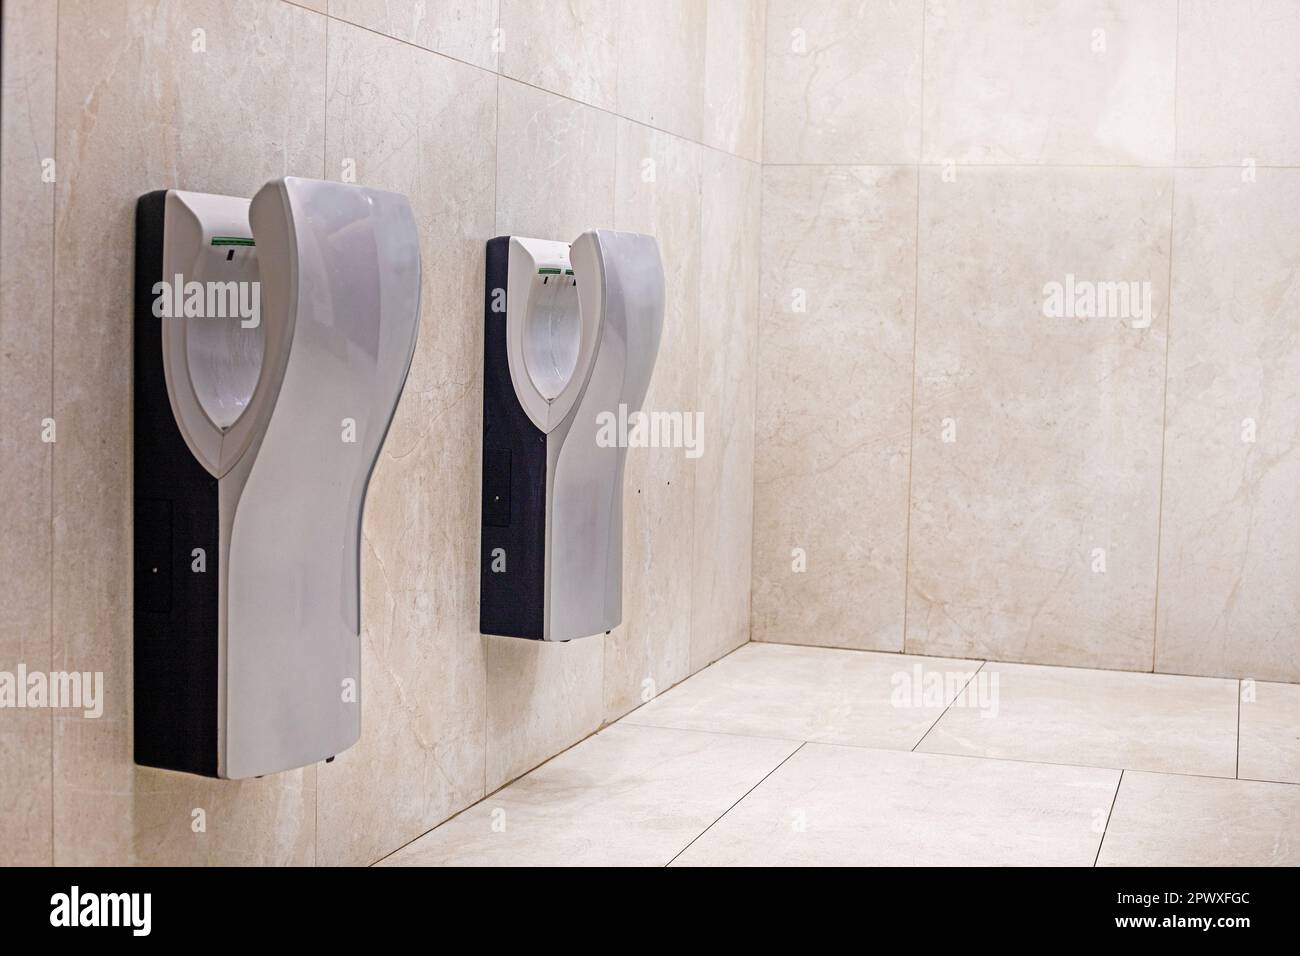 décoration moderne claire dans la salle de bains avec sèche-mains. horizontale Banque D'Images